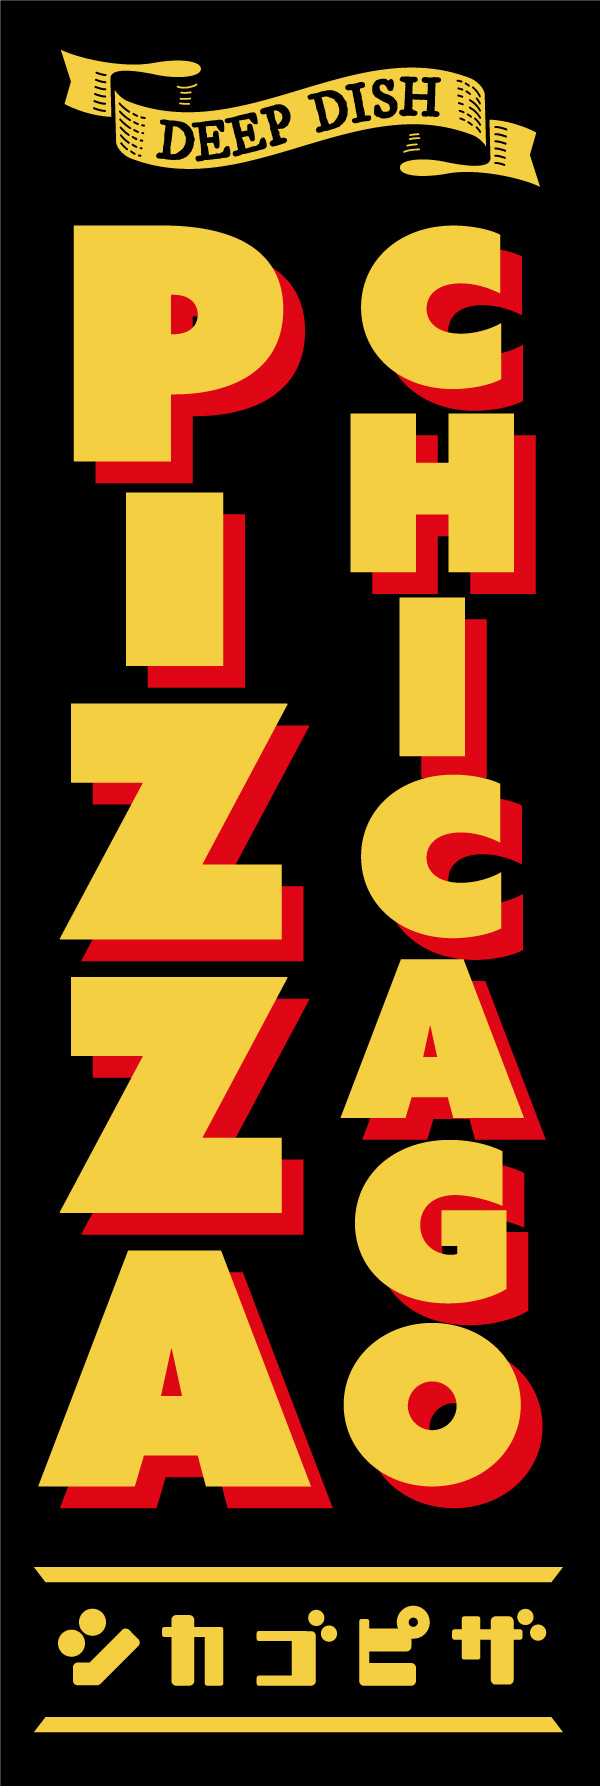 シカゴピザ 154_01 「CHICAGO PIZZA（シカゴピザ）」ののぼりです。別名「ディープディッシュピザ」なので「DEEP DISH」のリボンを入れたデザインにしました。（Y.M）